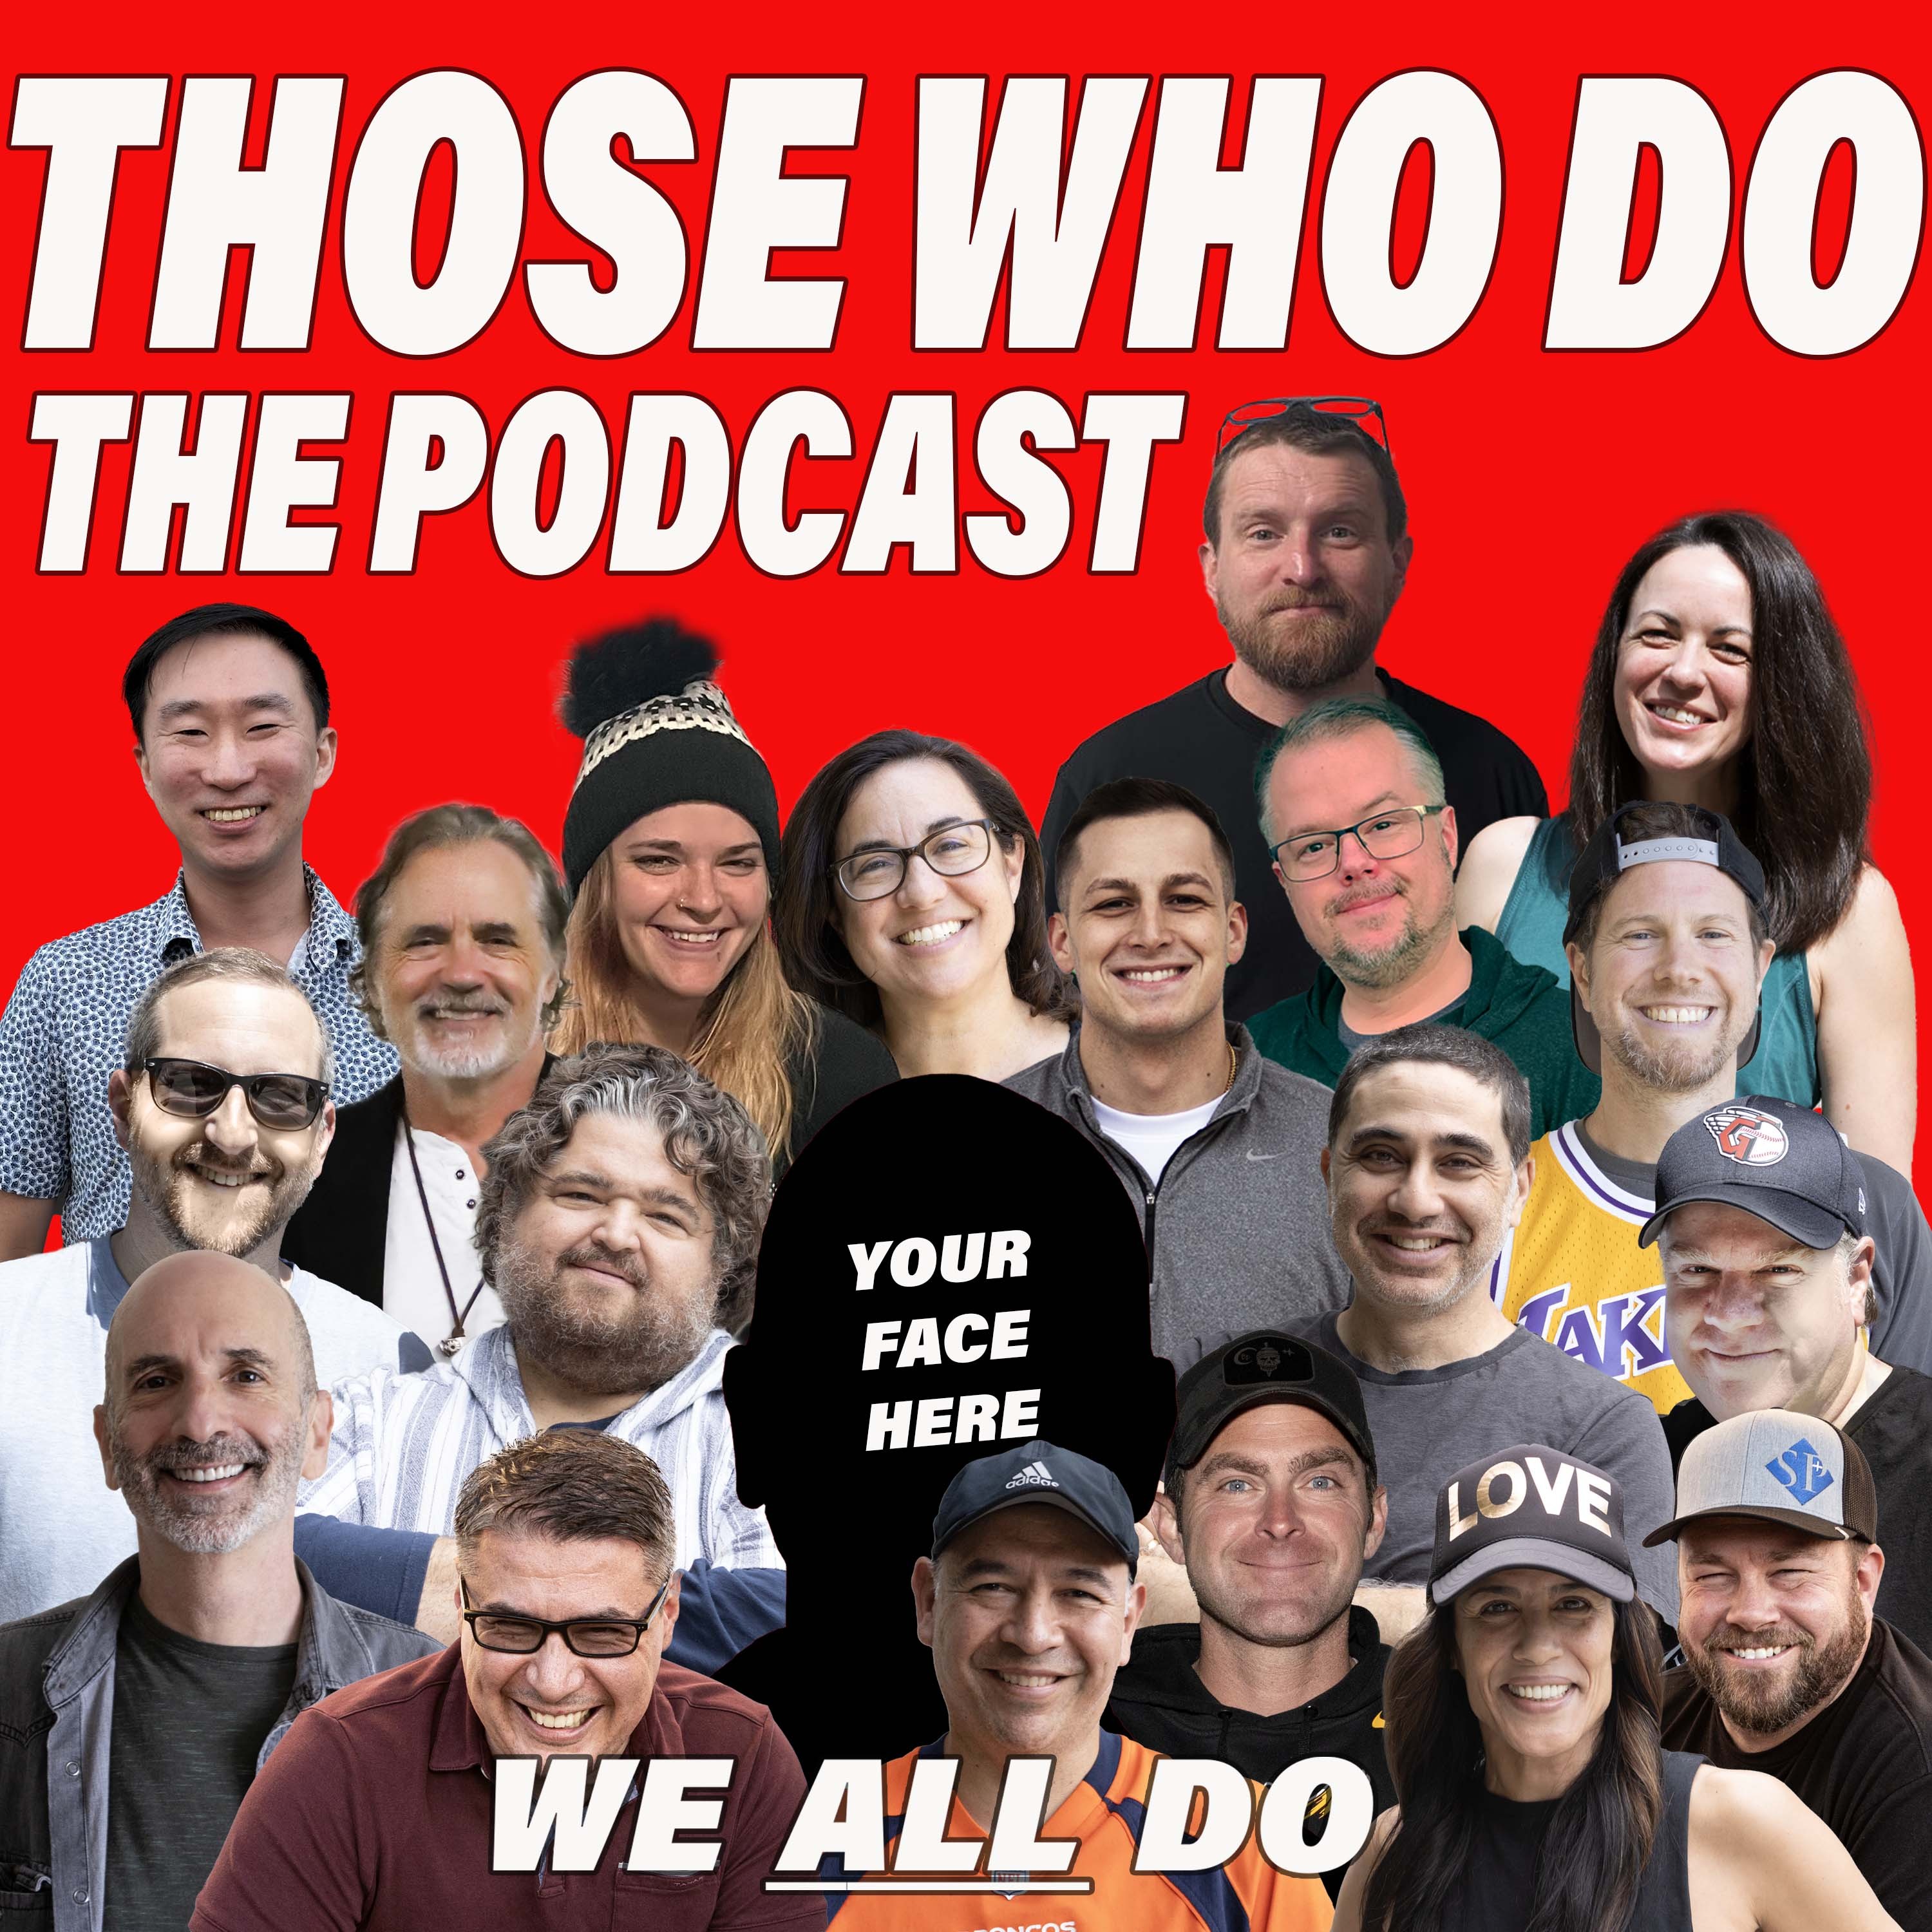 Those Who Do Podcast